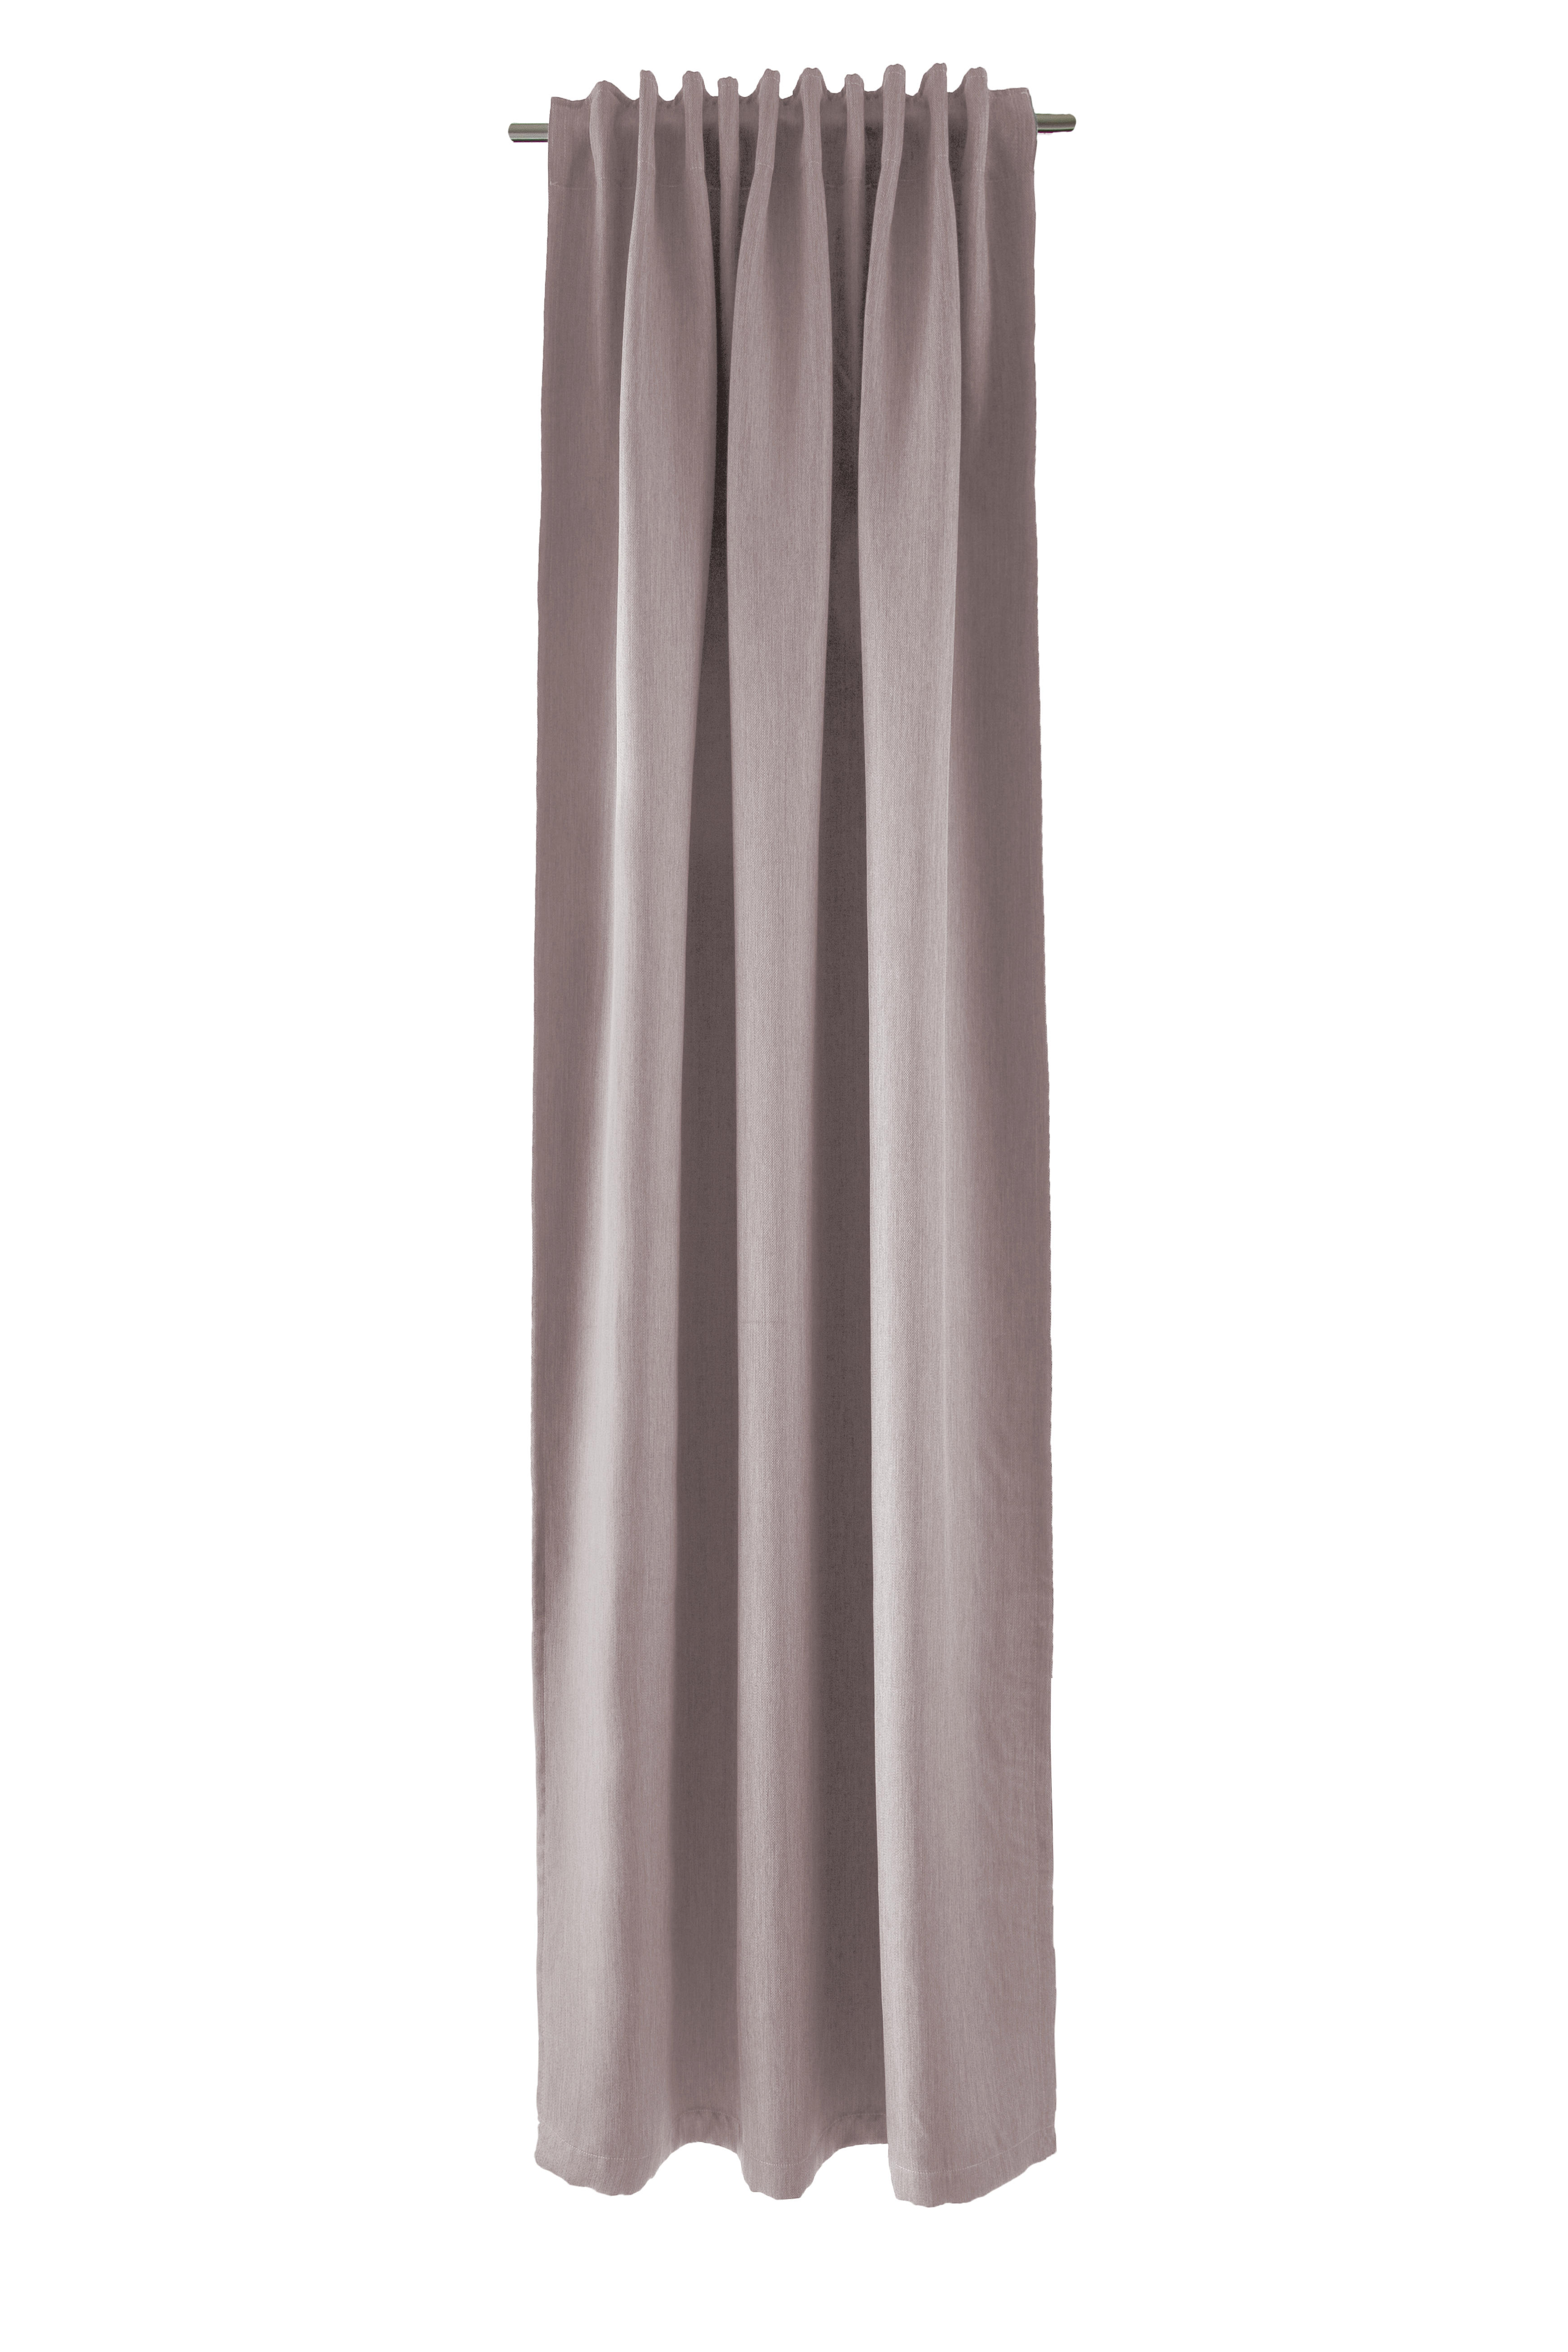 WÄRMESCHUTZVORHANG  Verdunkelung  140/245 cm   - Rosa, Basics, Textil (140/245cm)